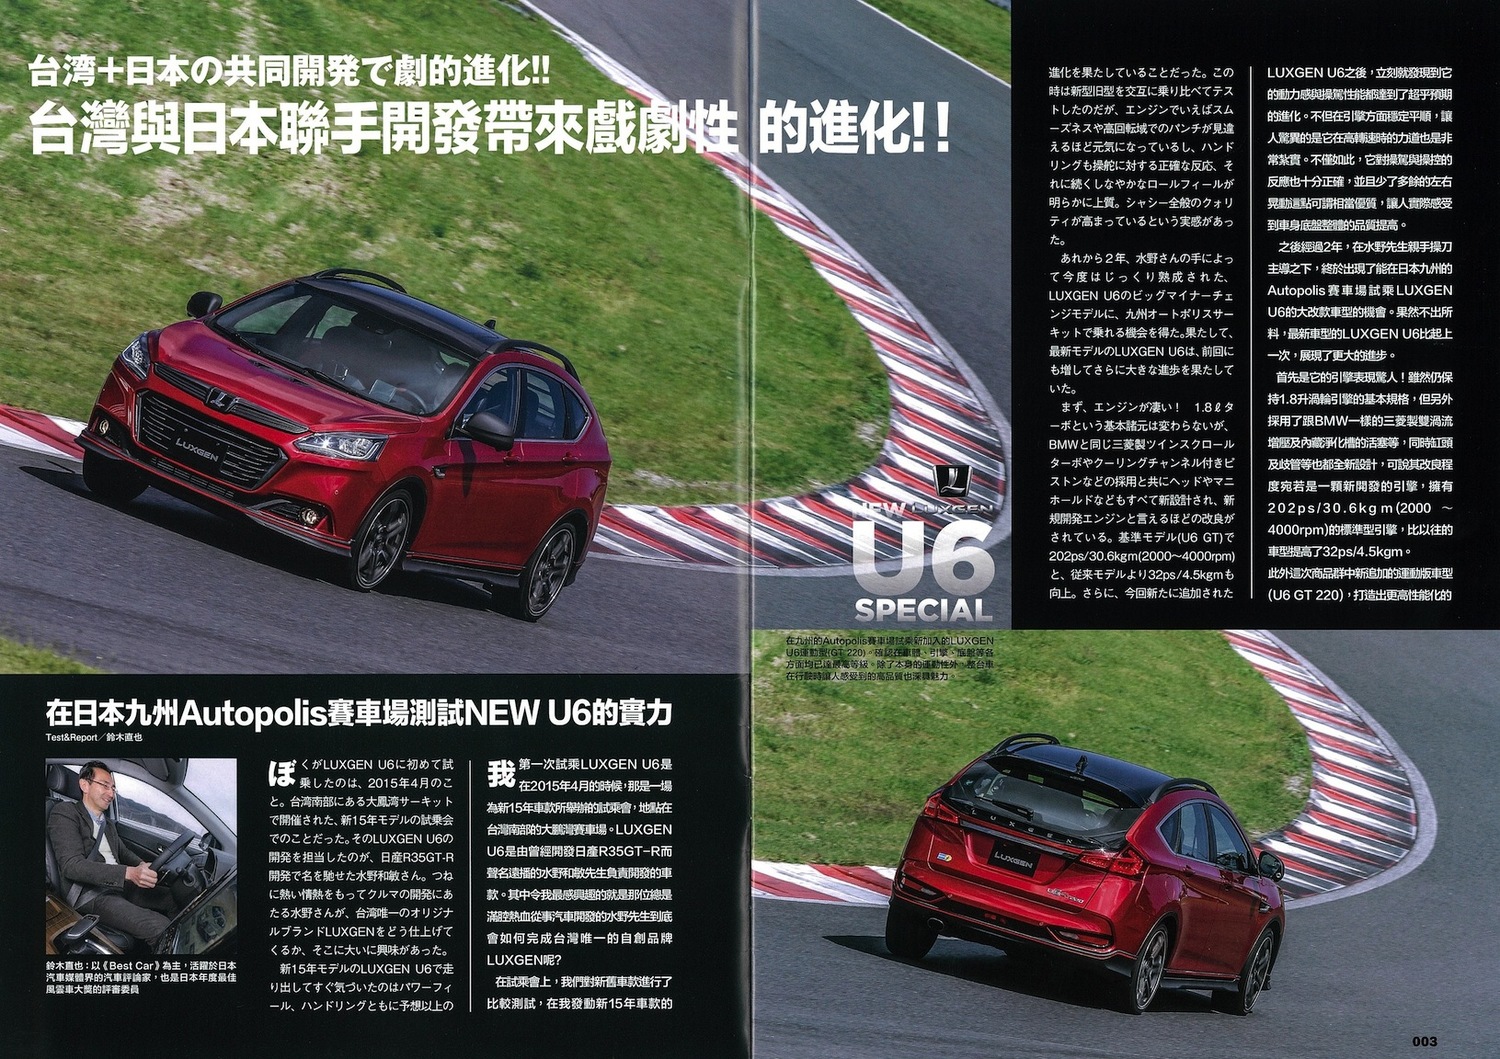 プレゼント 水野和敏氏が新型車を開発 その理論が詰まったパンフレットを30名様に 自動車情報誌 ベストカー